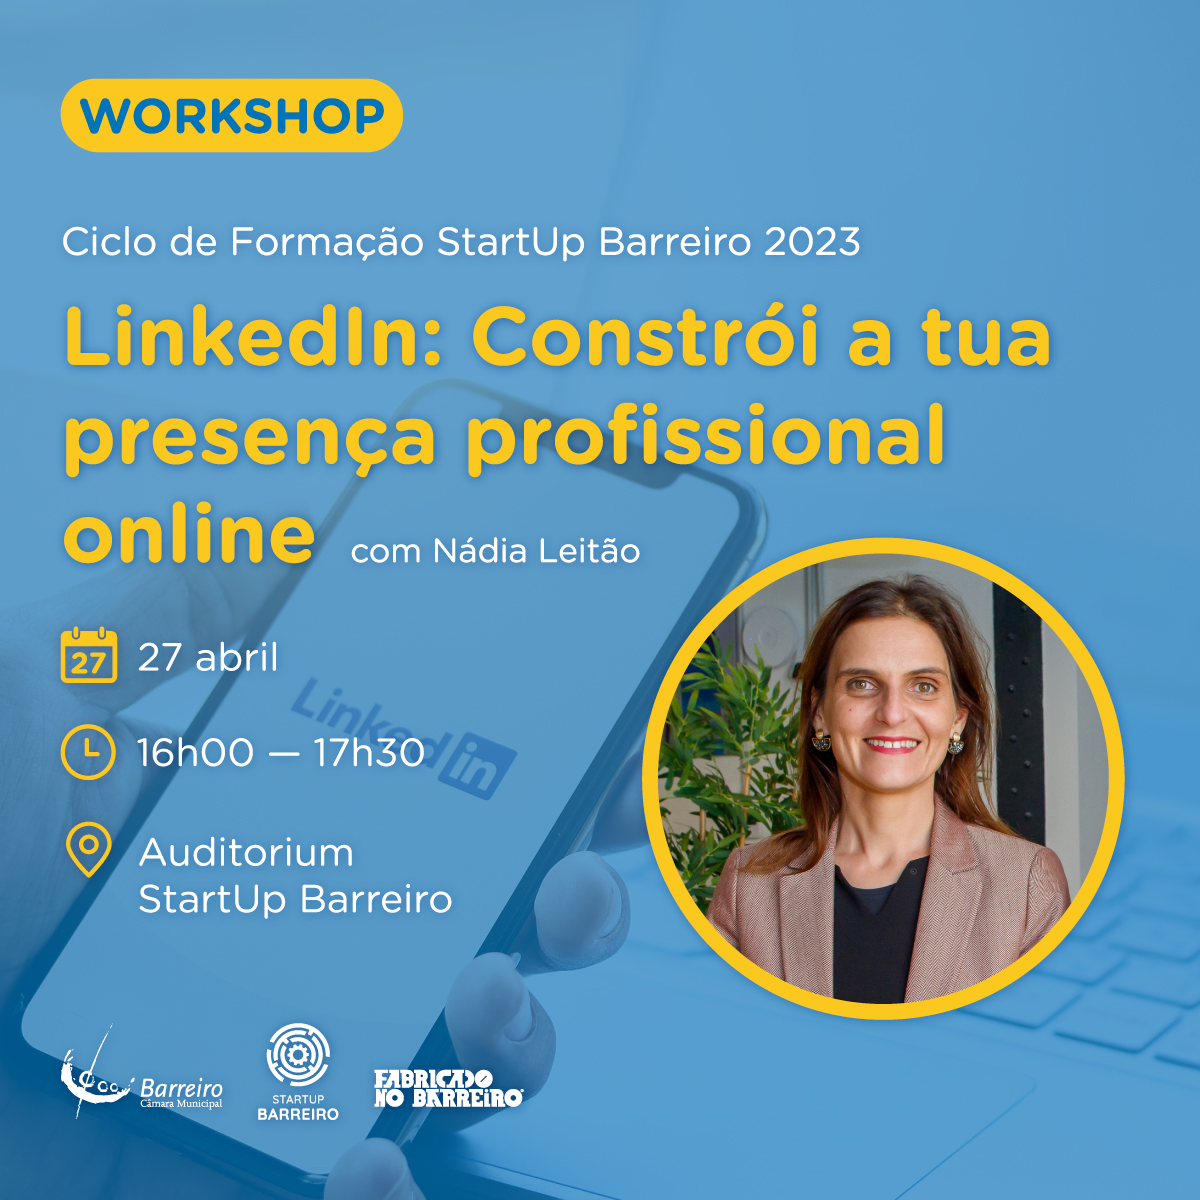 Workshop "LinkedIn: Constrói a tua presença profissional online" dia 27 de abril de 2023